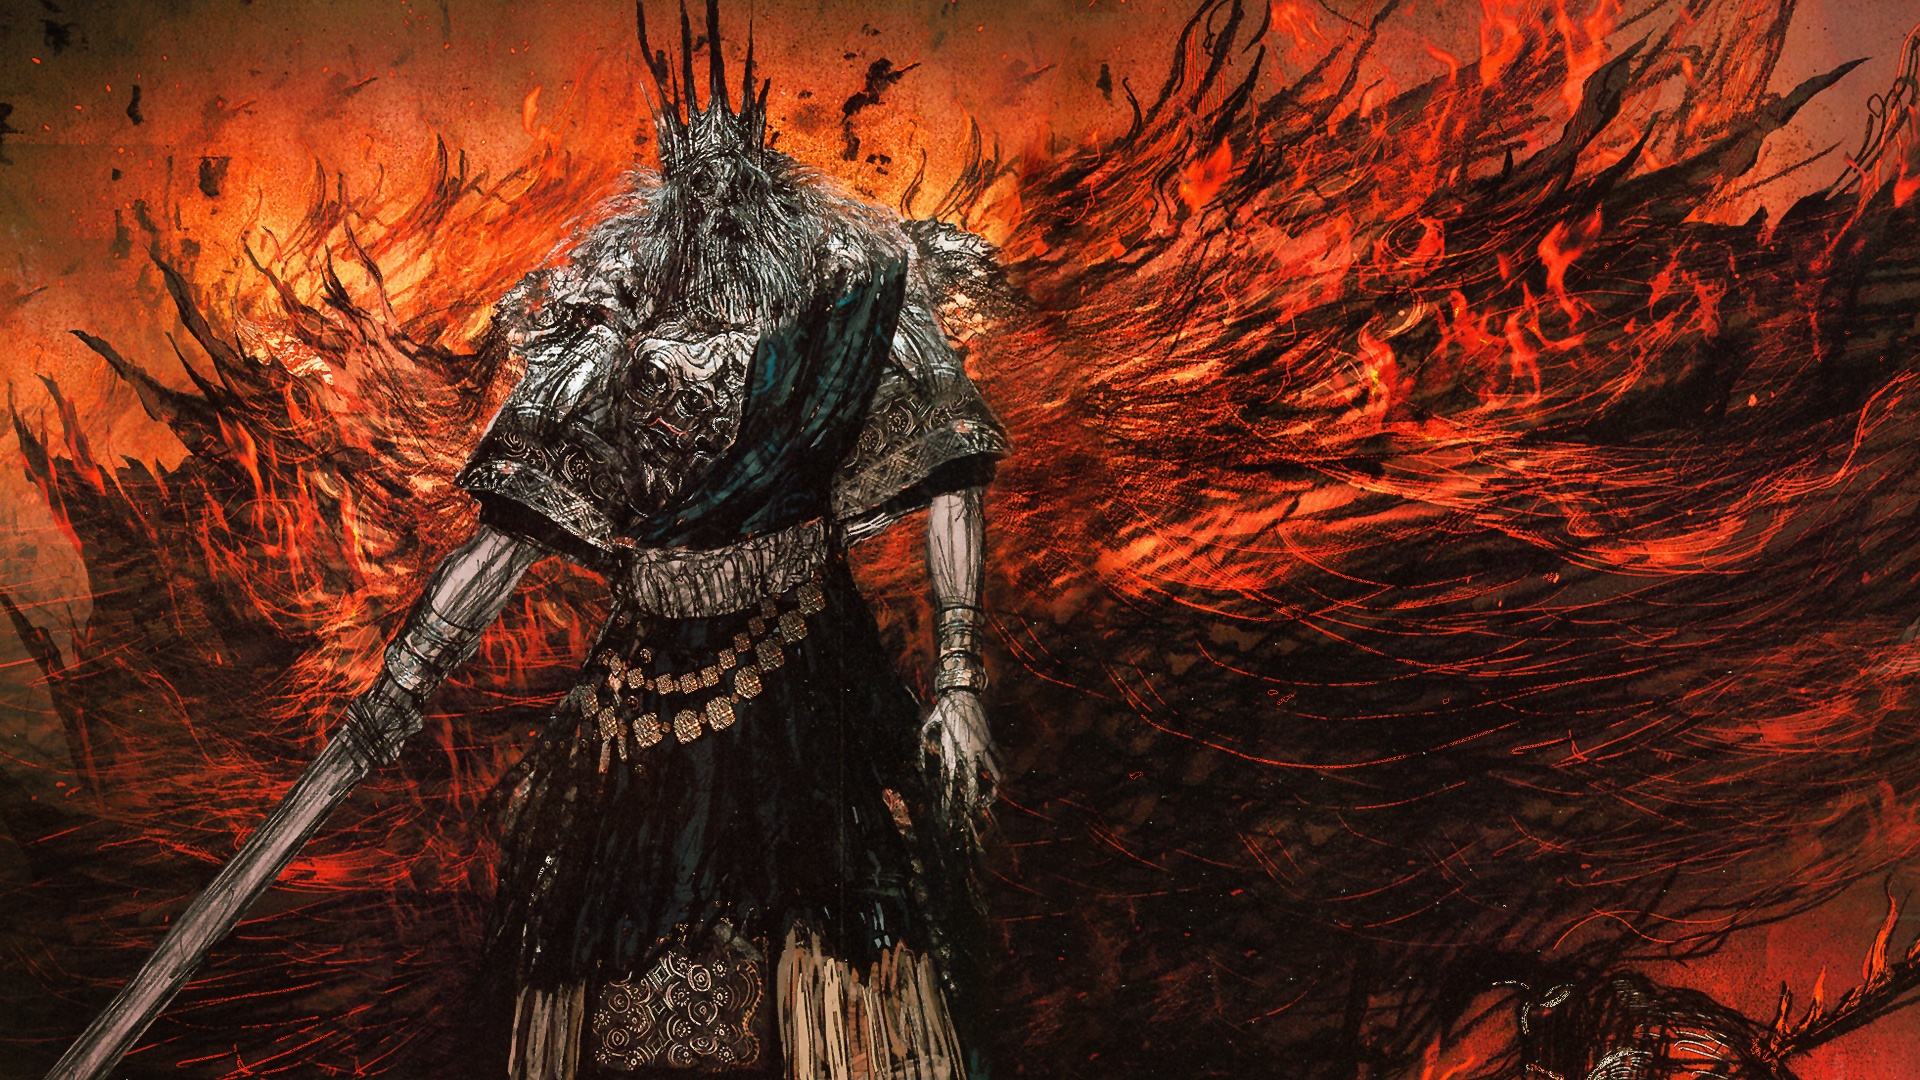 Gwyn Lord Of Cinder Dark Souls Wiki - roblox break in wiki evil ending